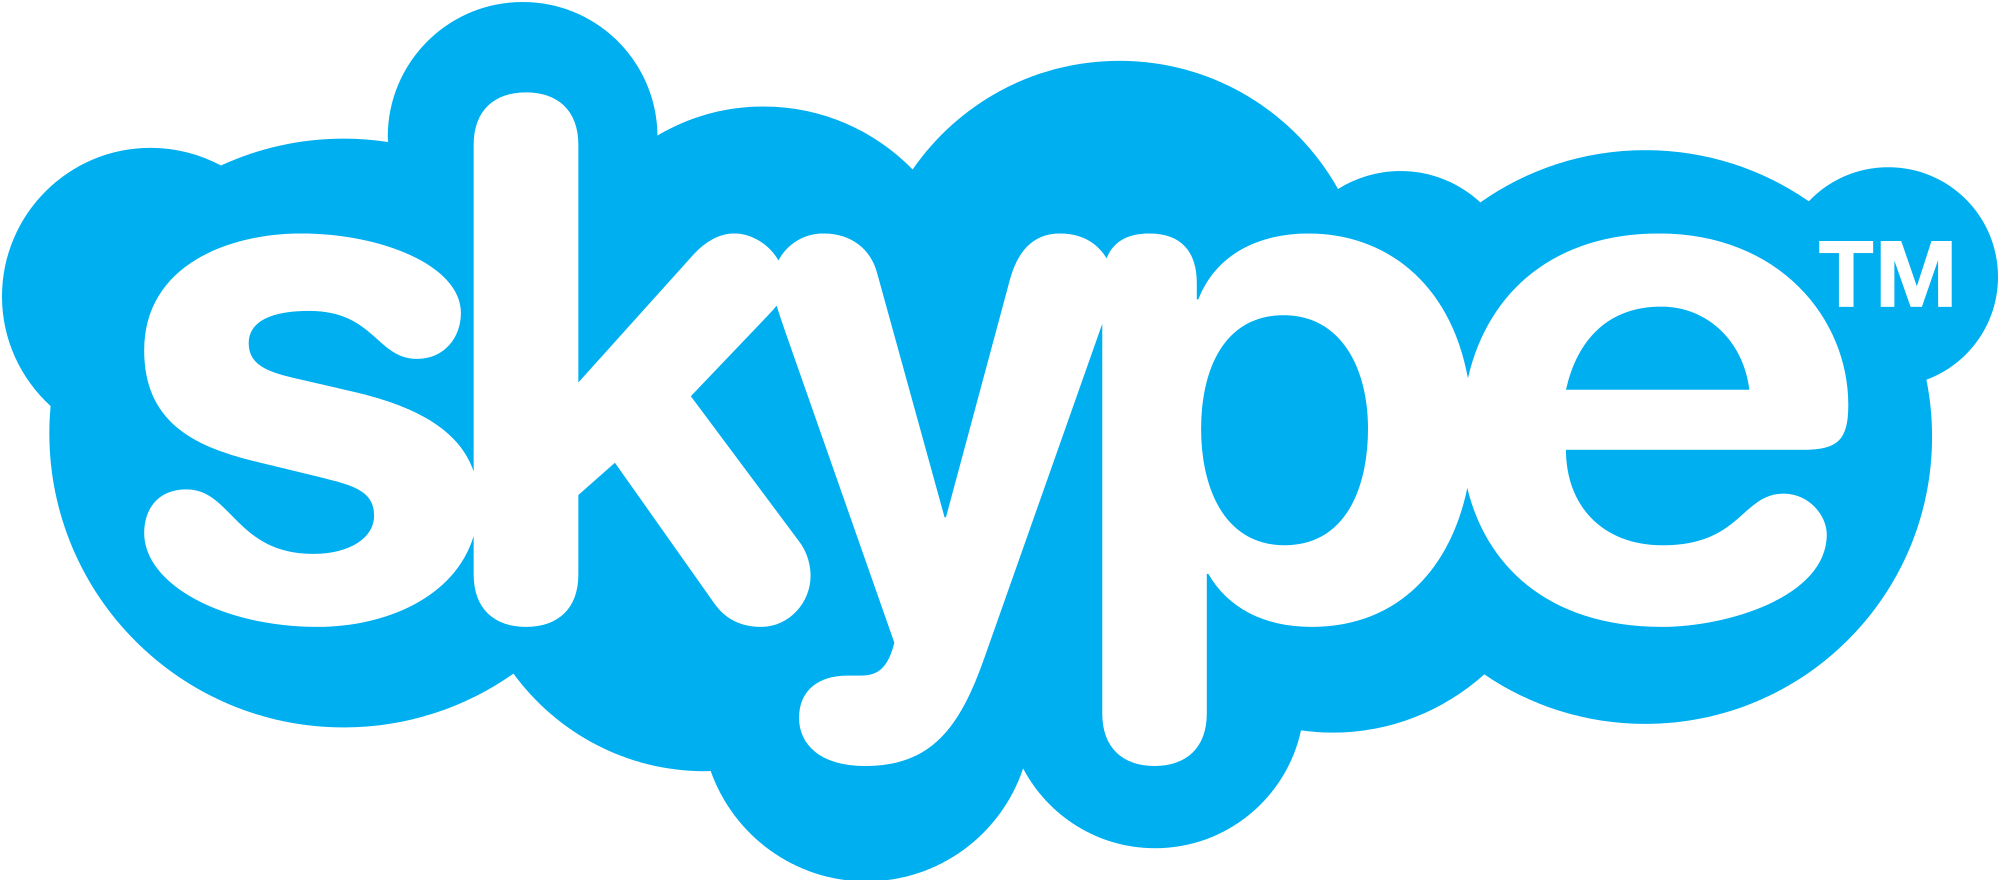 Skype_logo.svg.png